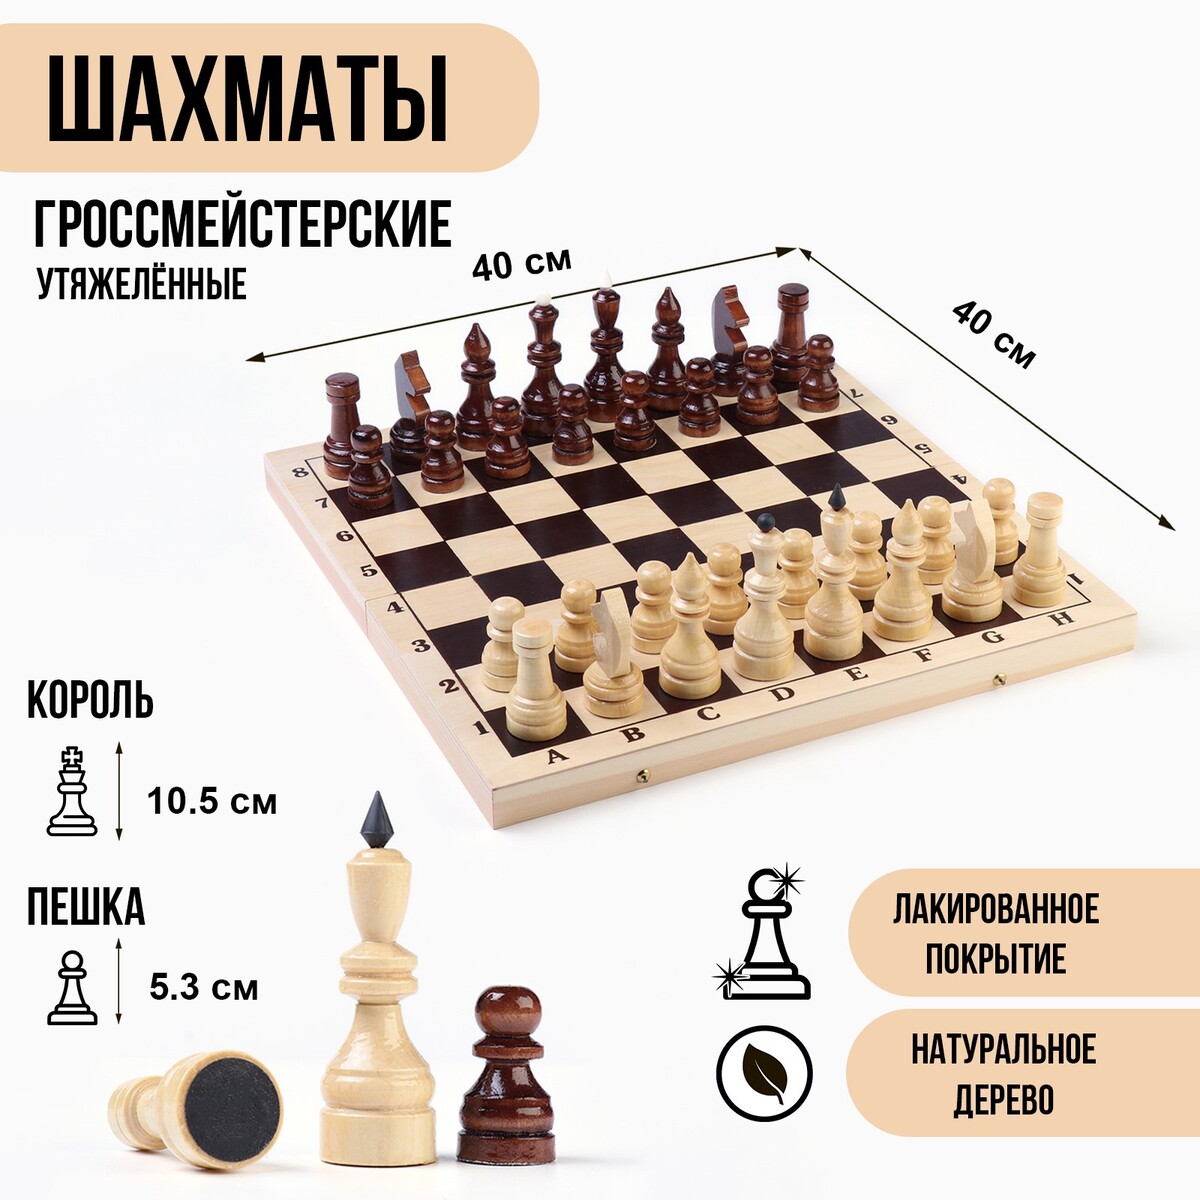 Шахматы гроссмейстерские, турнирные, утяжеленные, 40х40 см, король h=10.5 см, пешка 5.3 см письма скорпиона проходная пешка